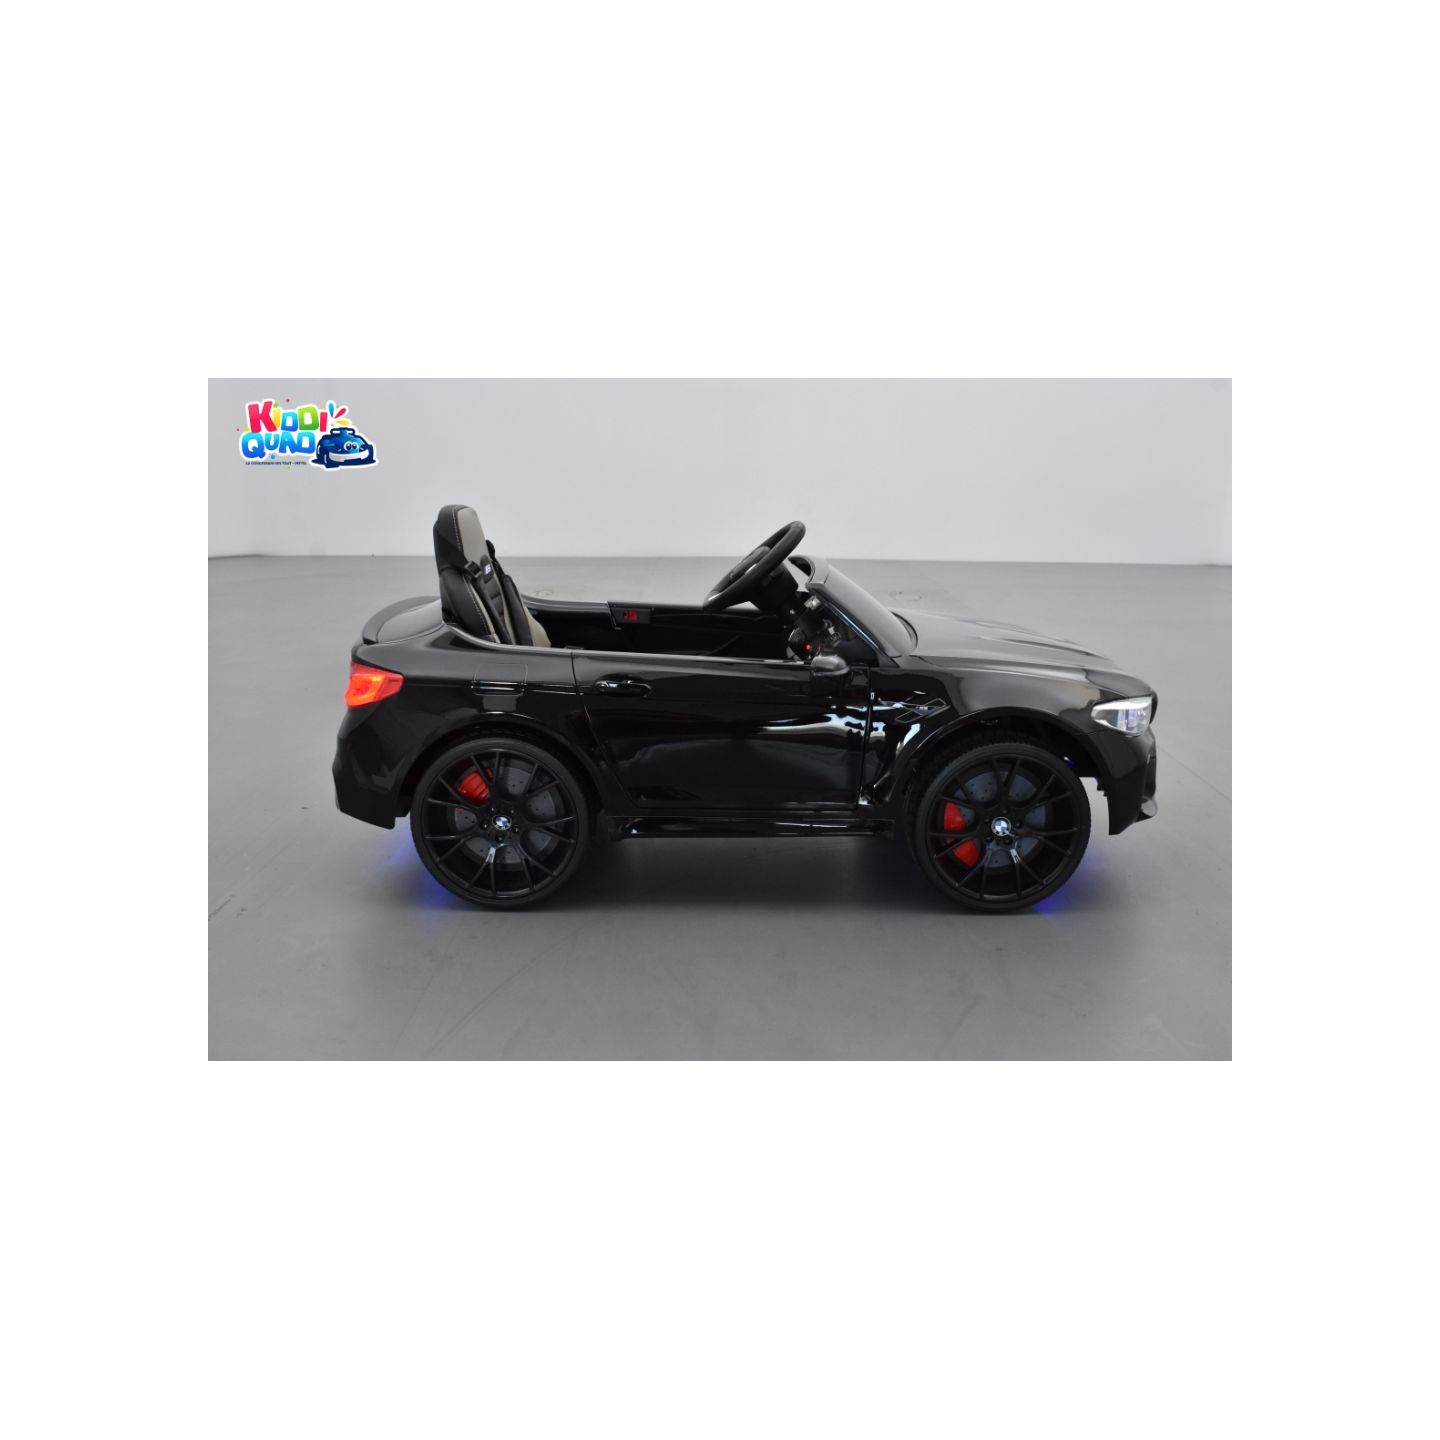 BMW M5 24 Volts noir, voiture électrique enfant 24 Volts 1 place, 2 moteurs